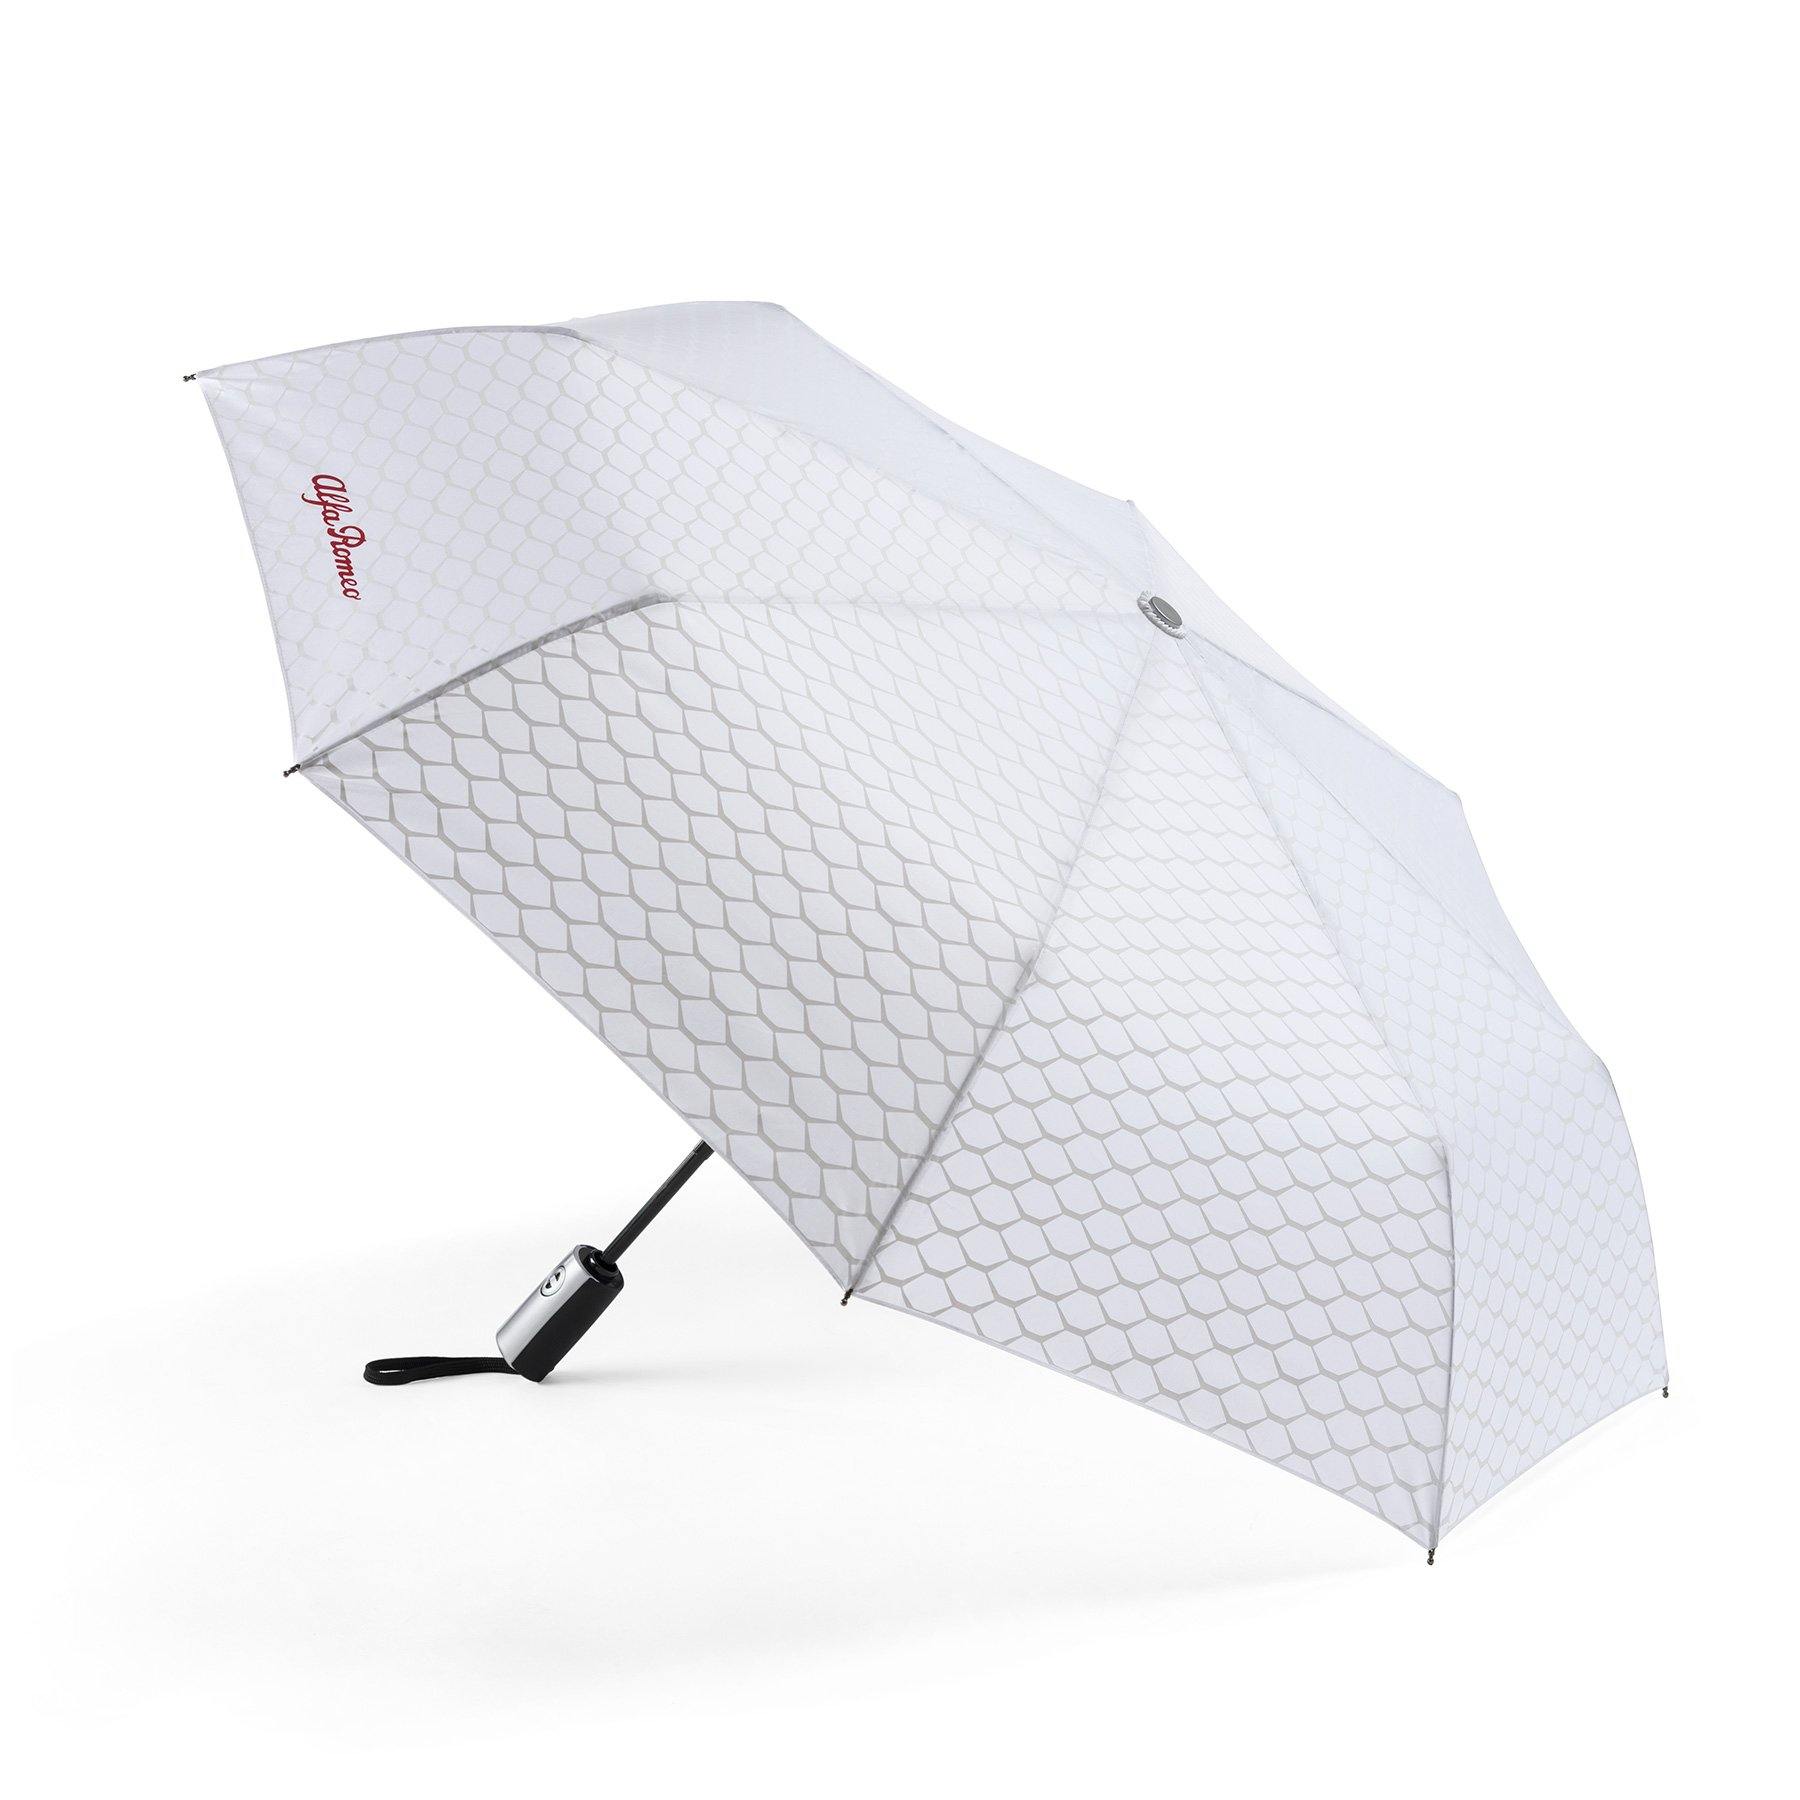 Umbrella - Alfa Romeo - 6002350058